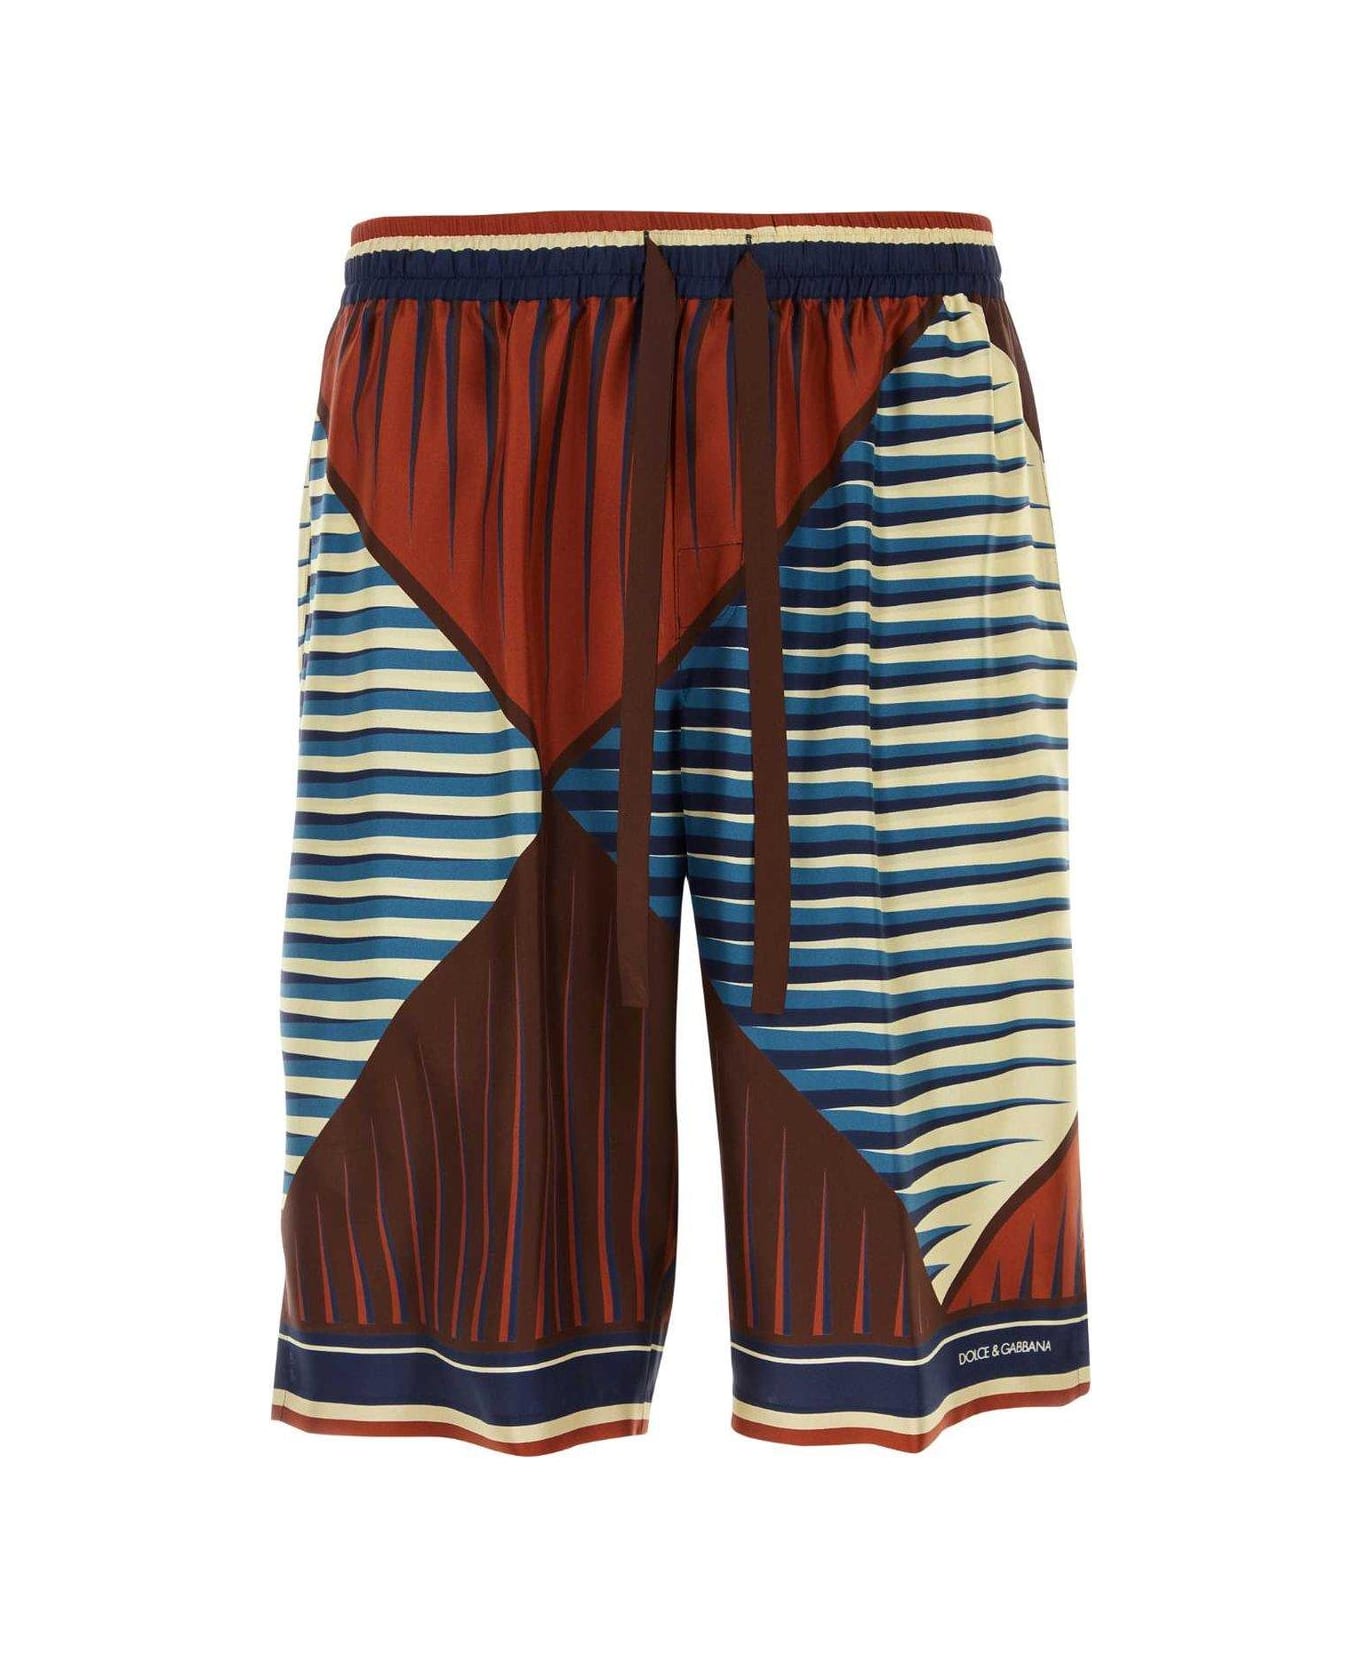 Dolce & Gabbana Bermuda Shorts - LUSSO